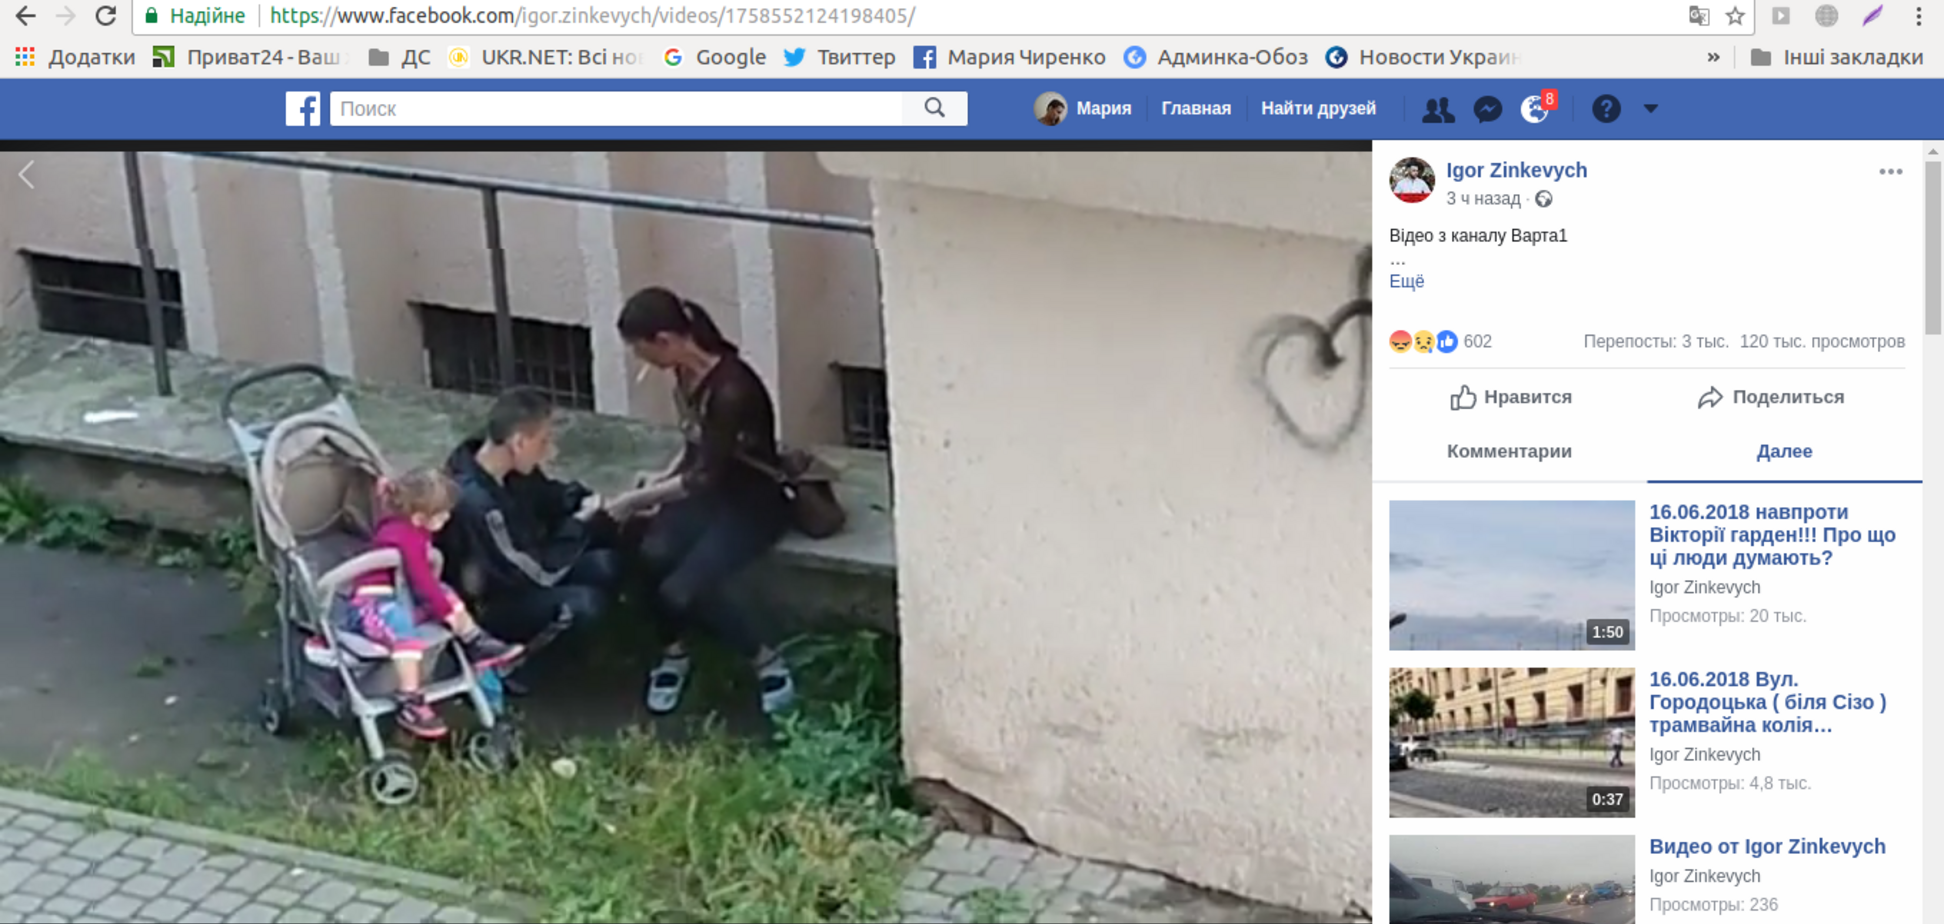 На глазах у дочери: во Львове колющиеся на улице наркоманы попали на видео